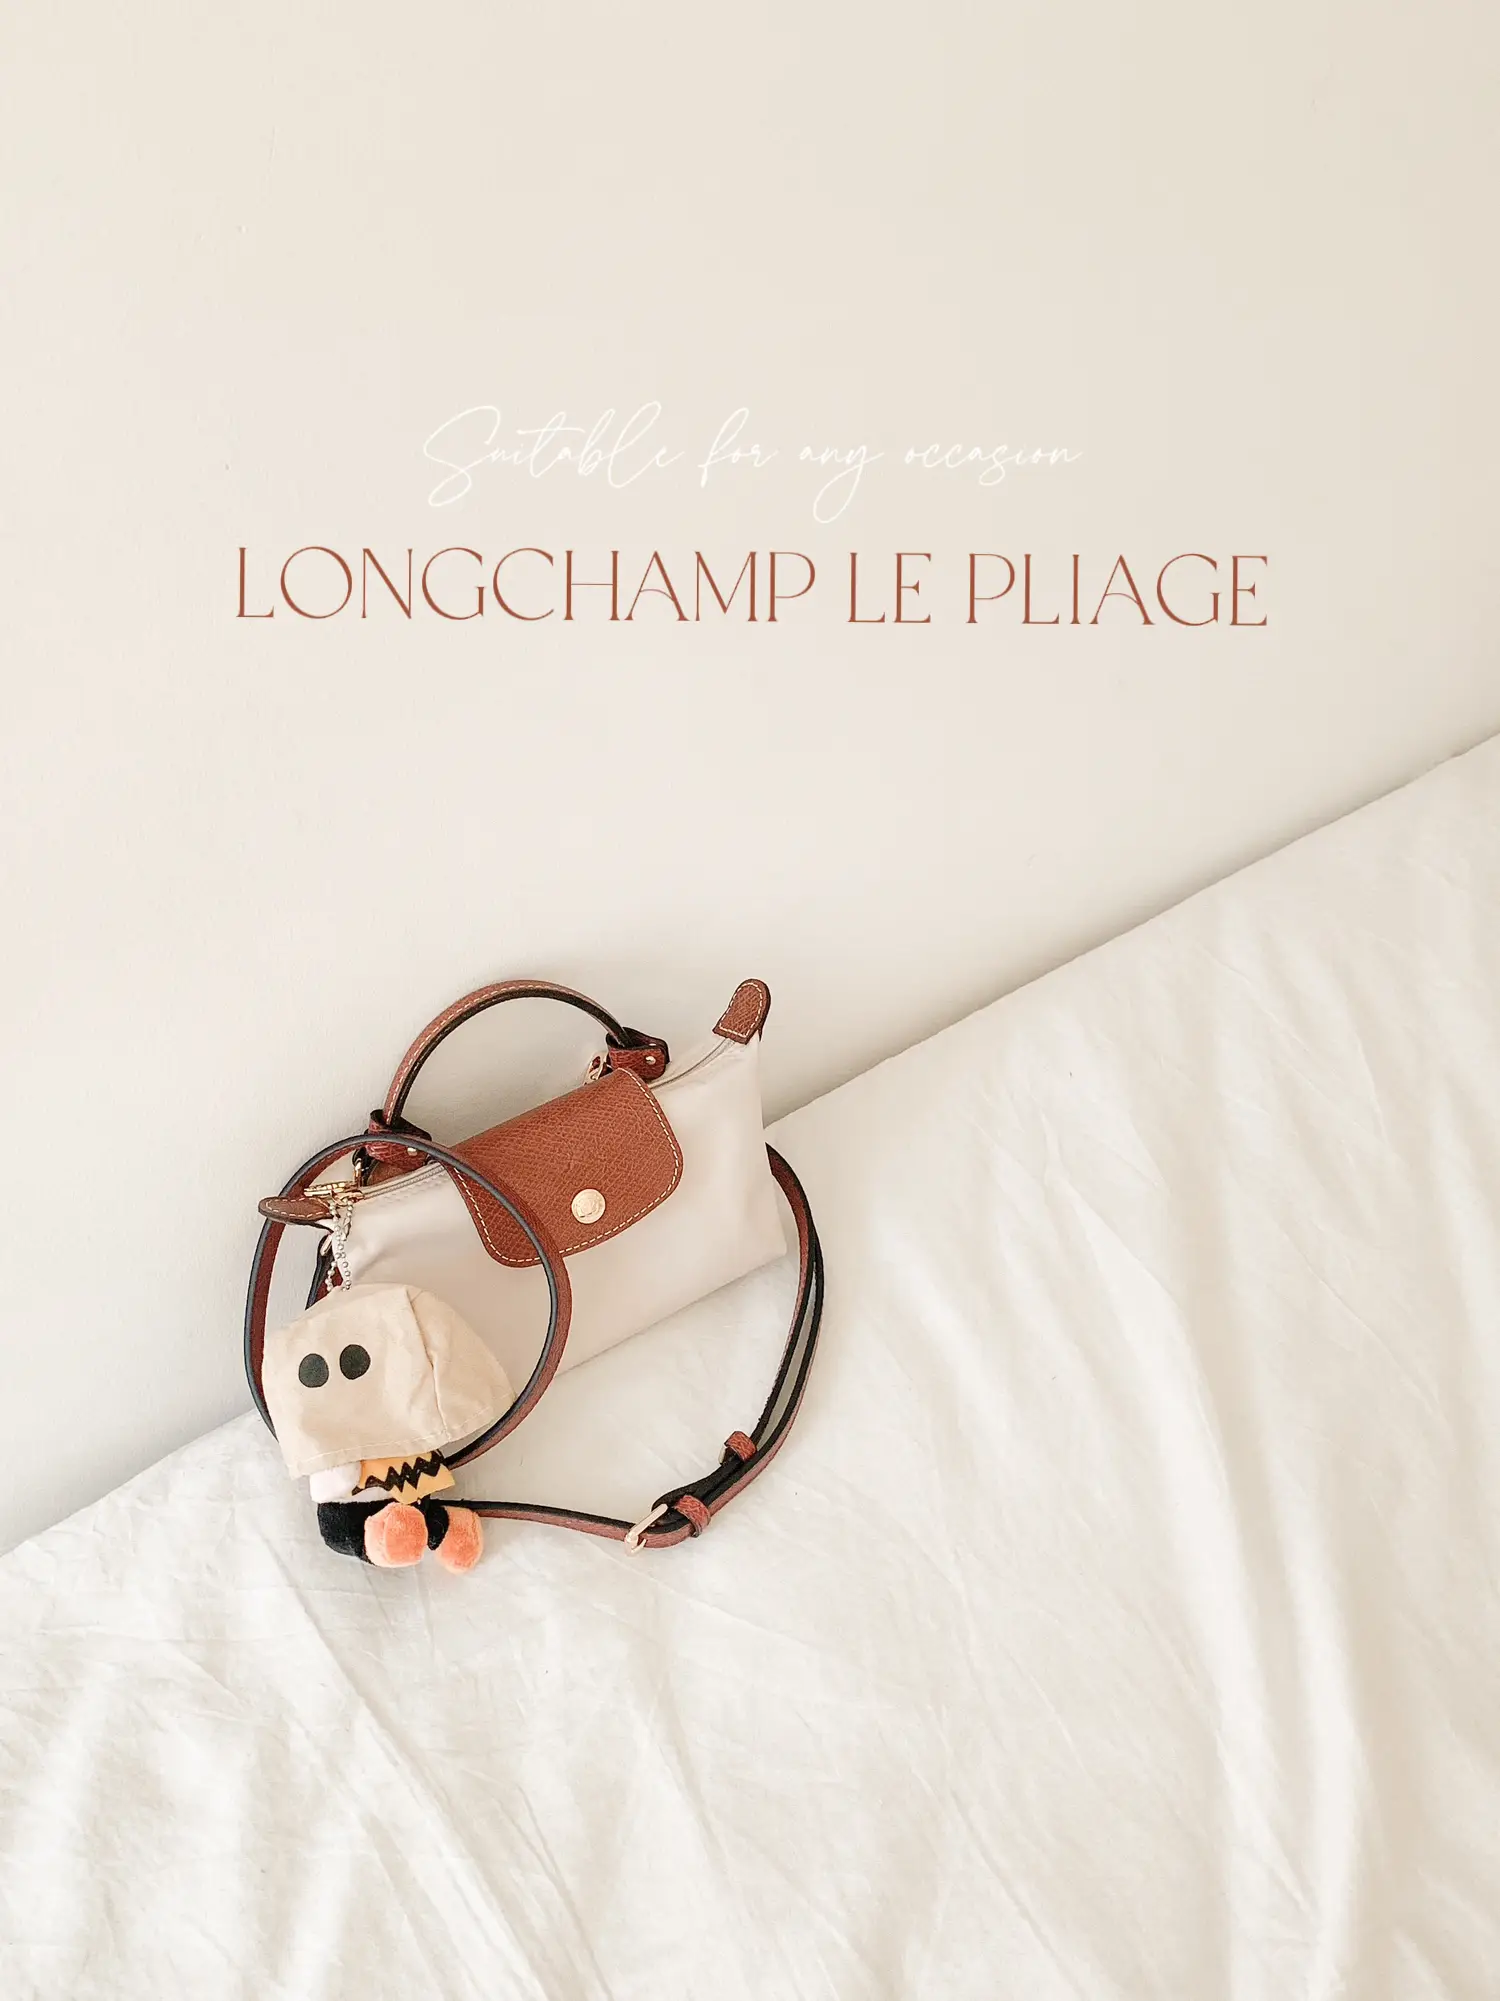 Longchamp Le Pliage Pouch with handle #longchamp #longchamplepliage #l